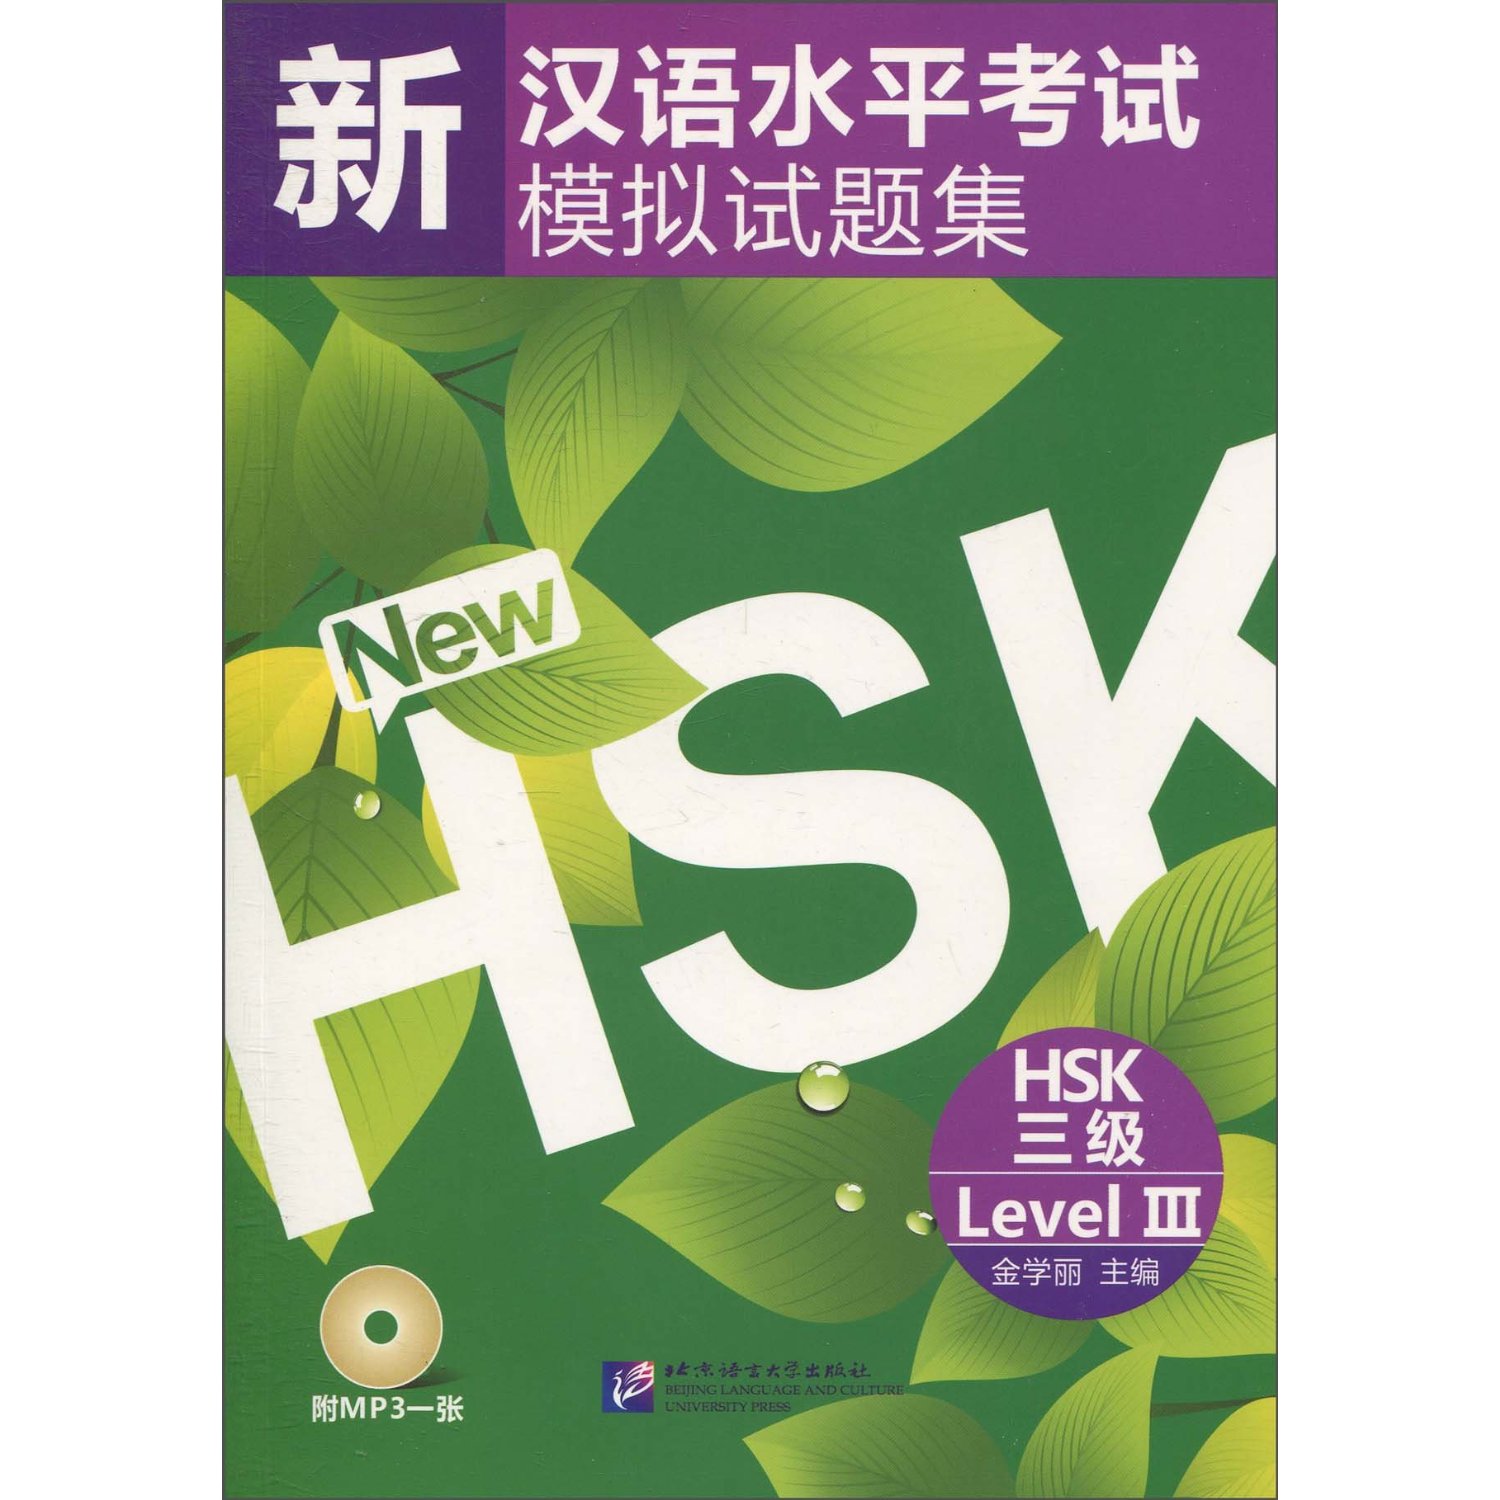 หนังสือเรียนภาษาจีนเตรียมสอบ HSK ระดับ 3 พร้อม MP3